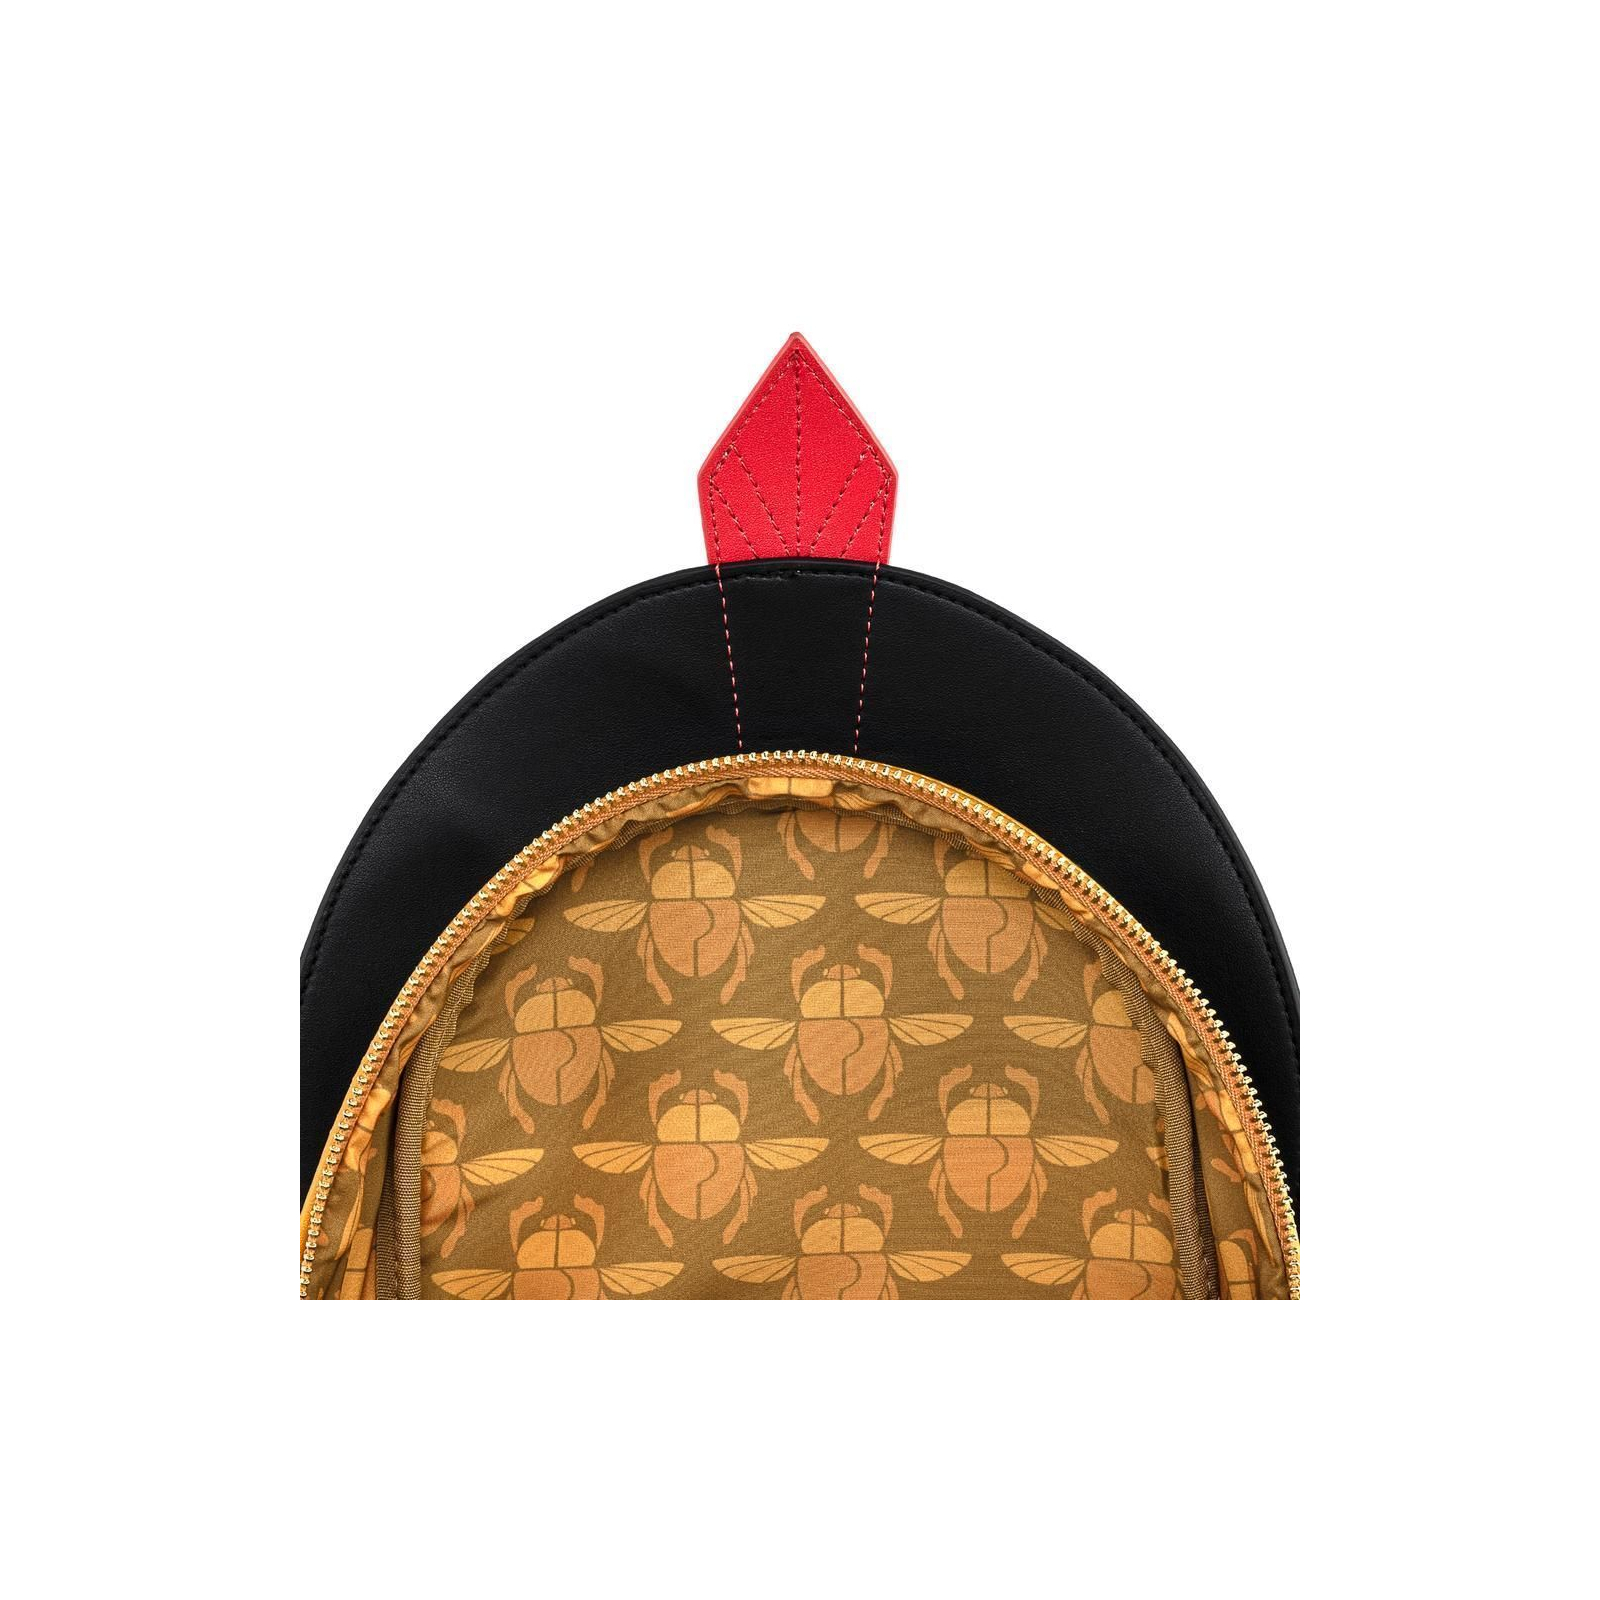 Рюкзак школьный Loungefly Disney - Aladdin Jafar Cosplay Mini Backpack (WDBK1149) изображение 2